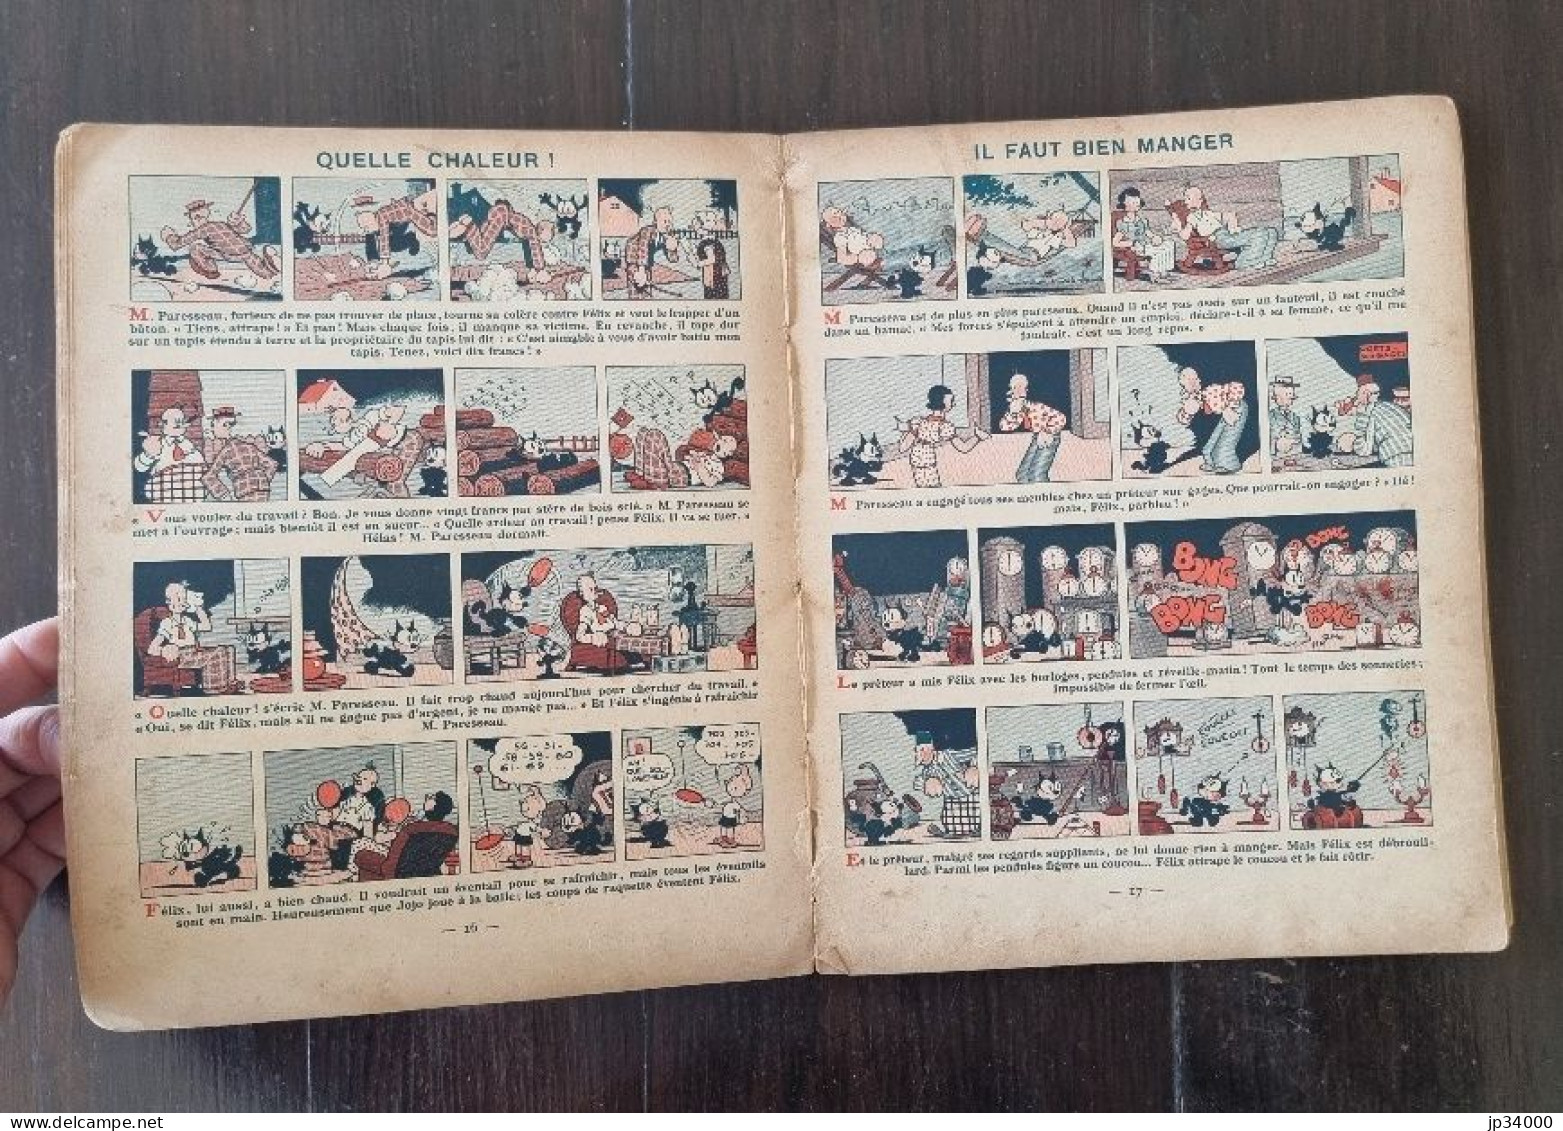 FELIX Le CHAT PILOTE De Pat SULLIVAN  Edition Originale Chez Hachette En 1938 - Félix Le Chat